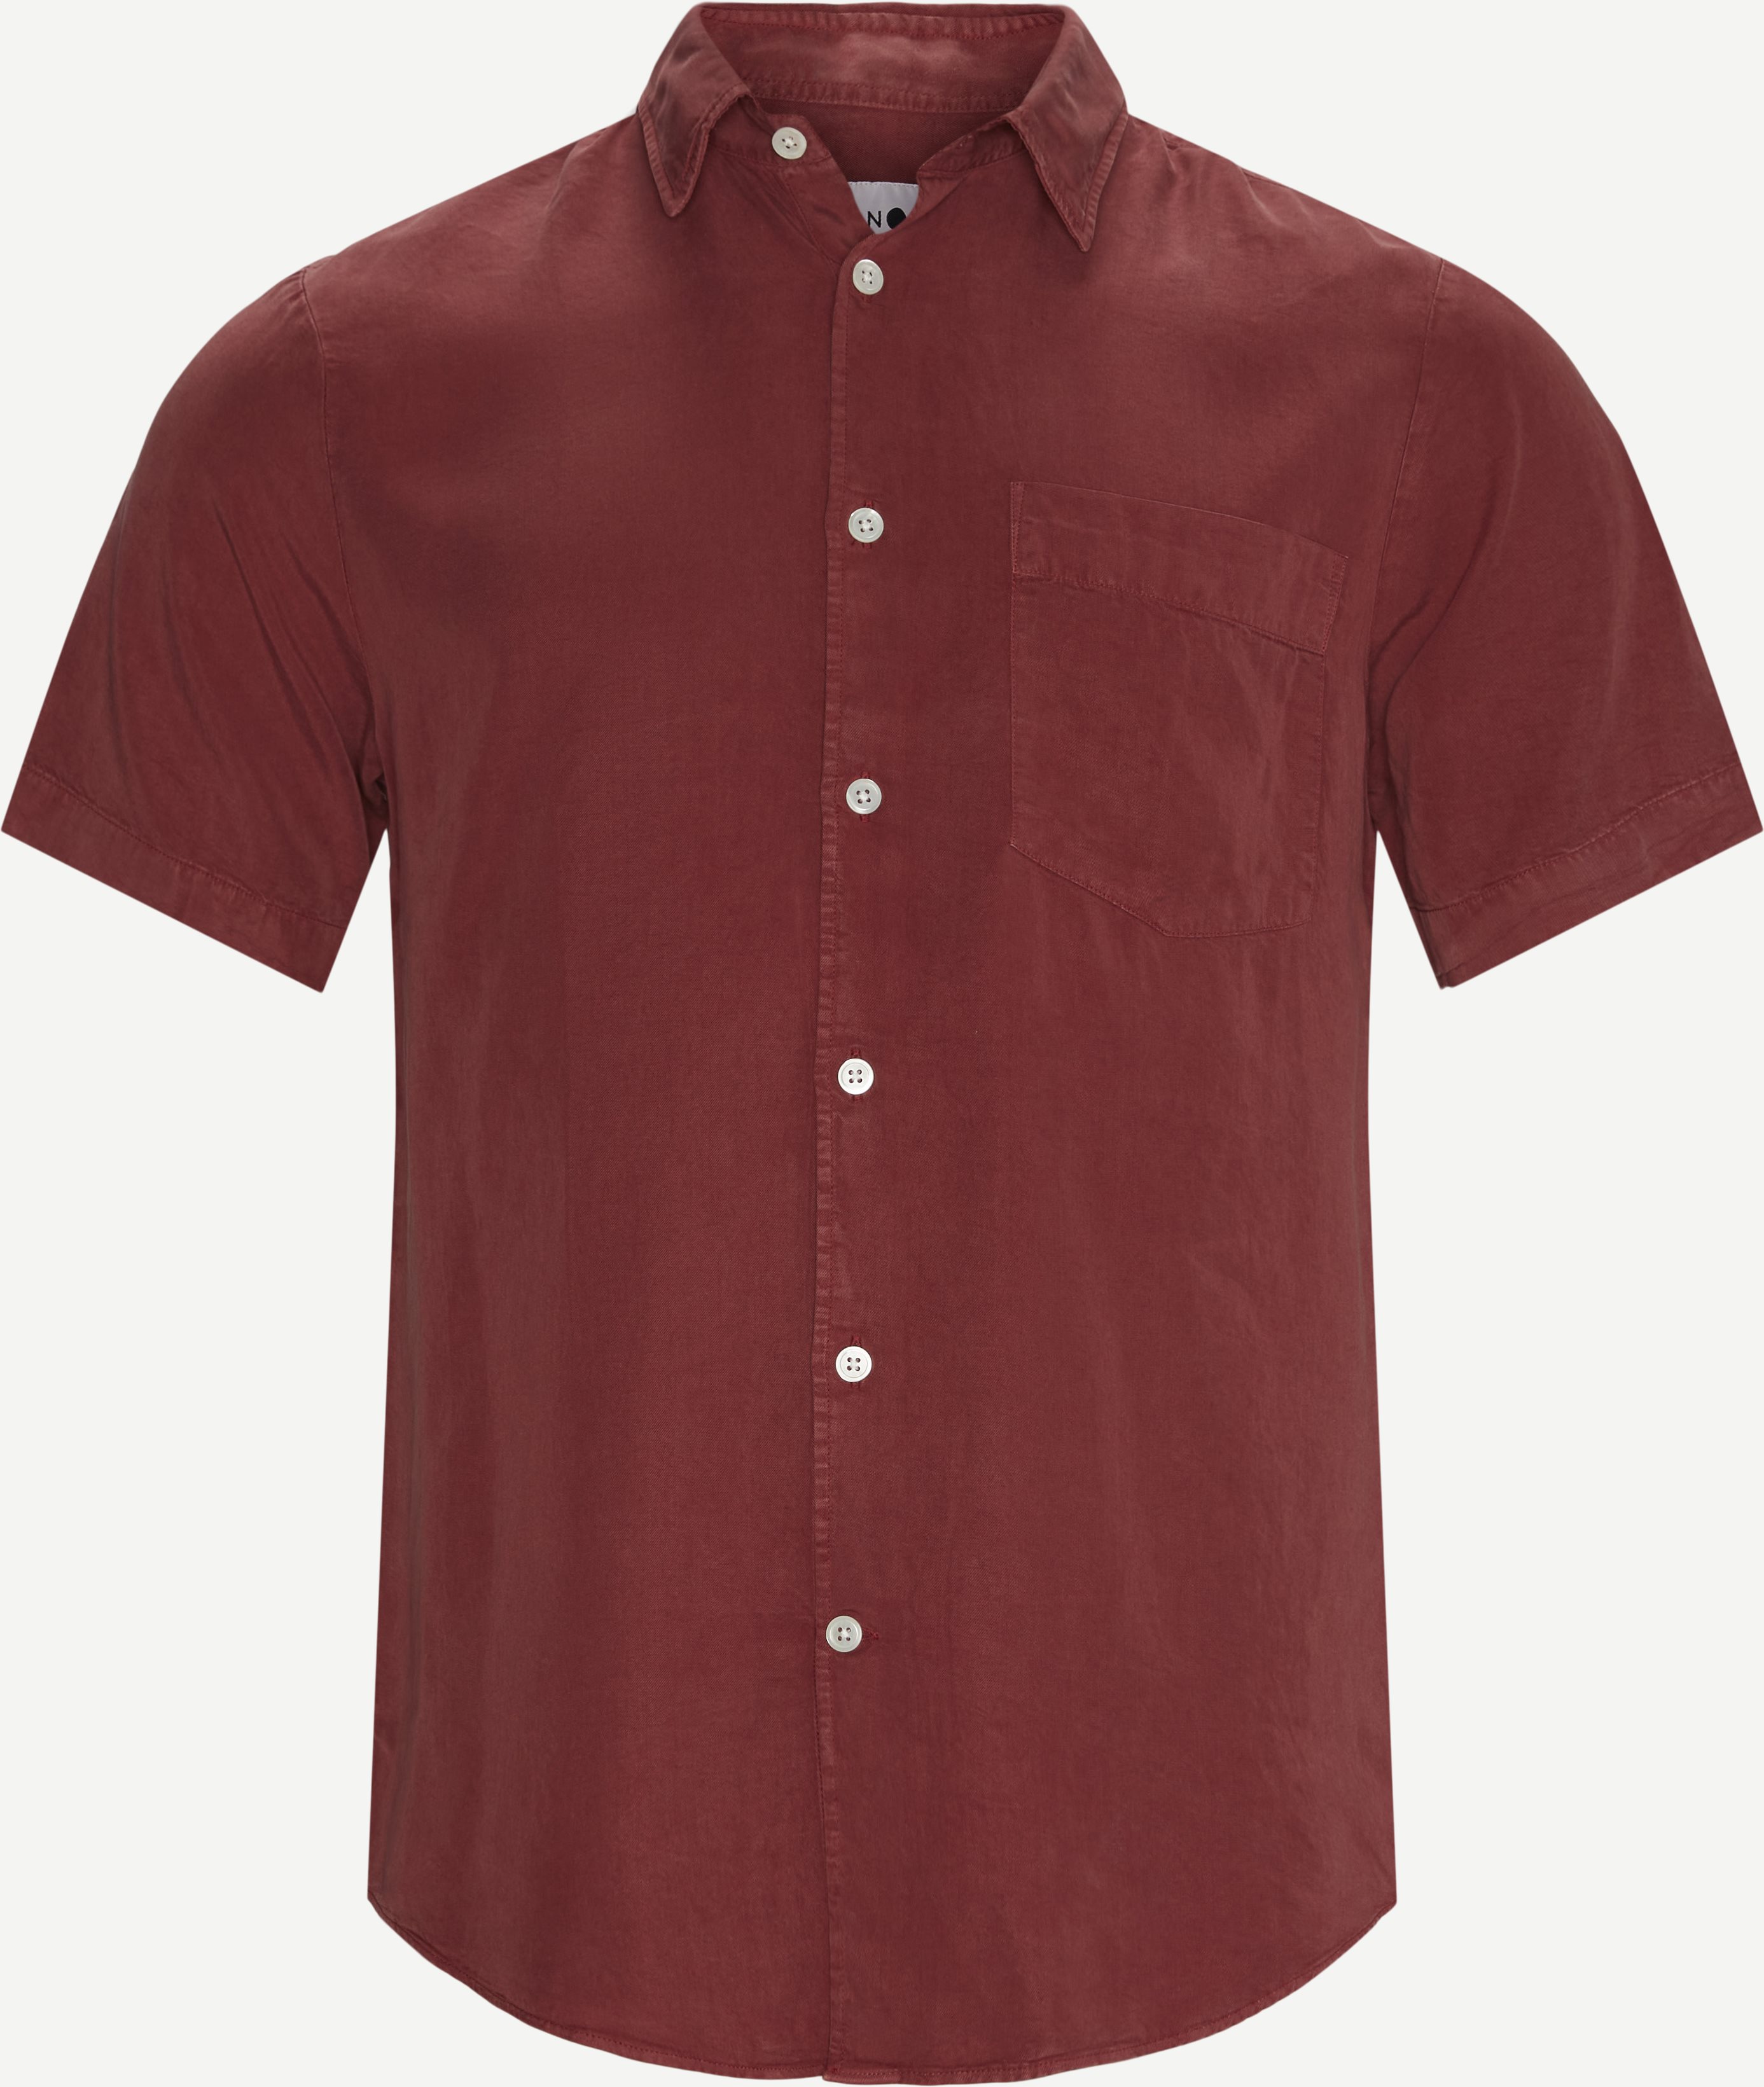 Errico K/Æ Skjorte - Kortærmede skjorter - Regular fit - Rød